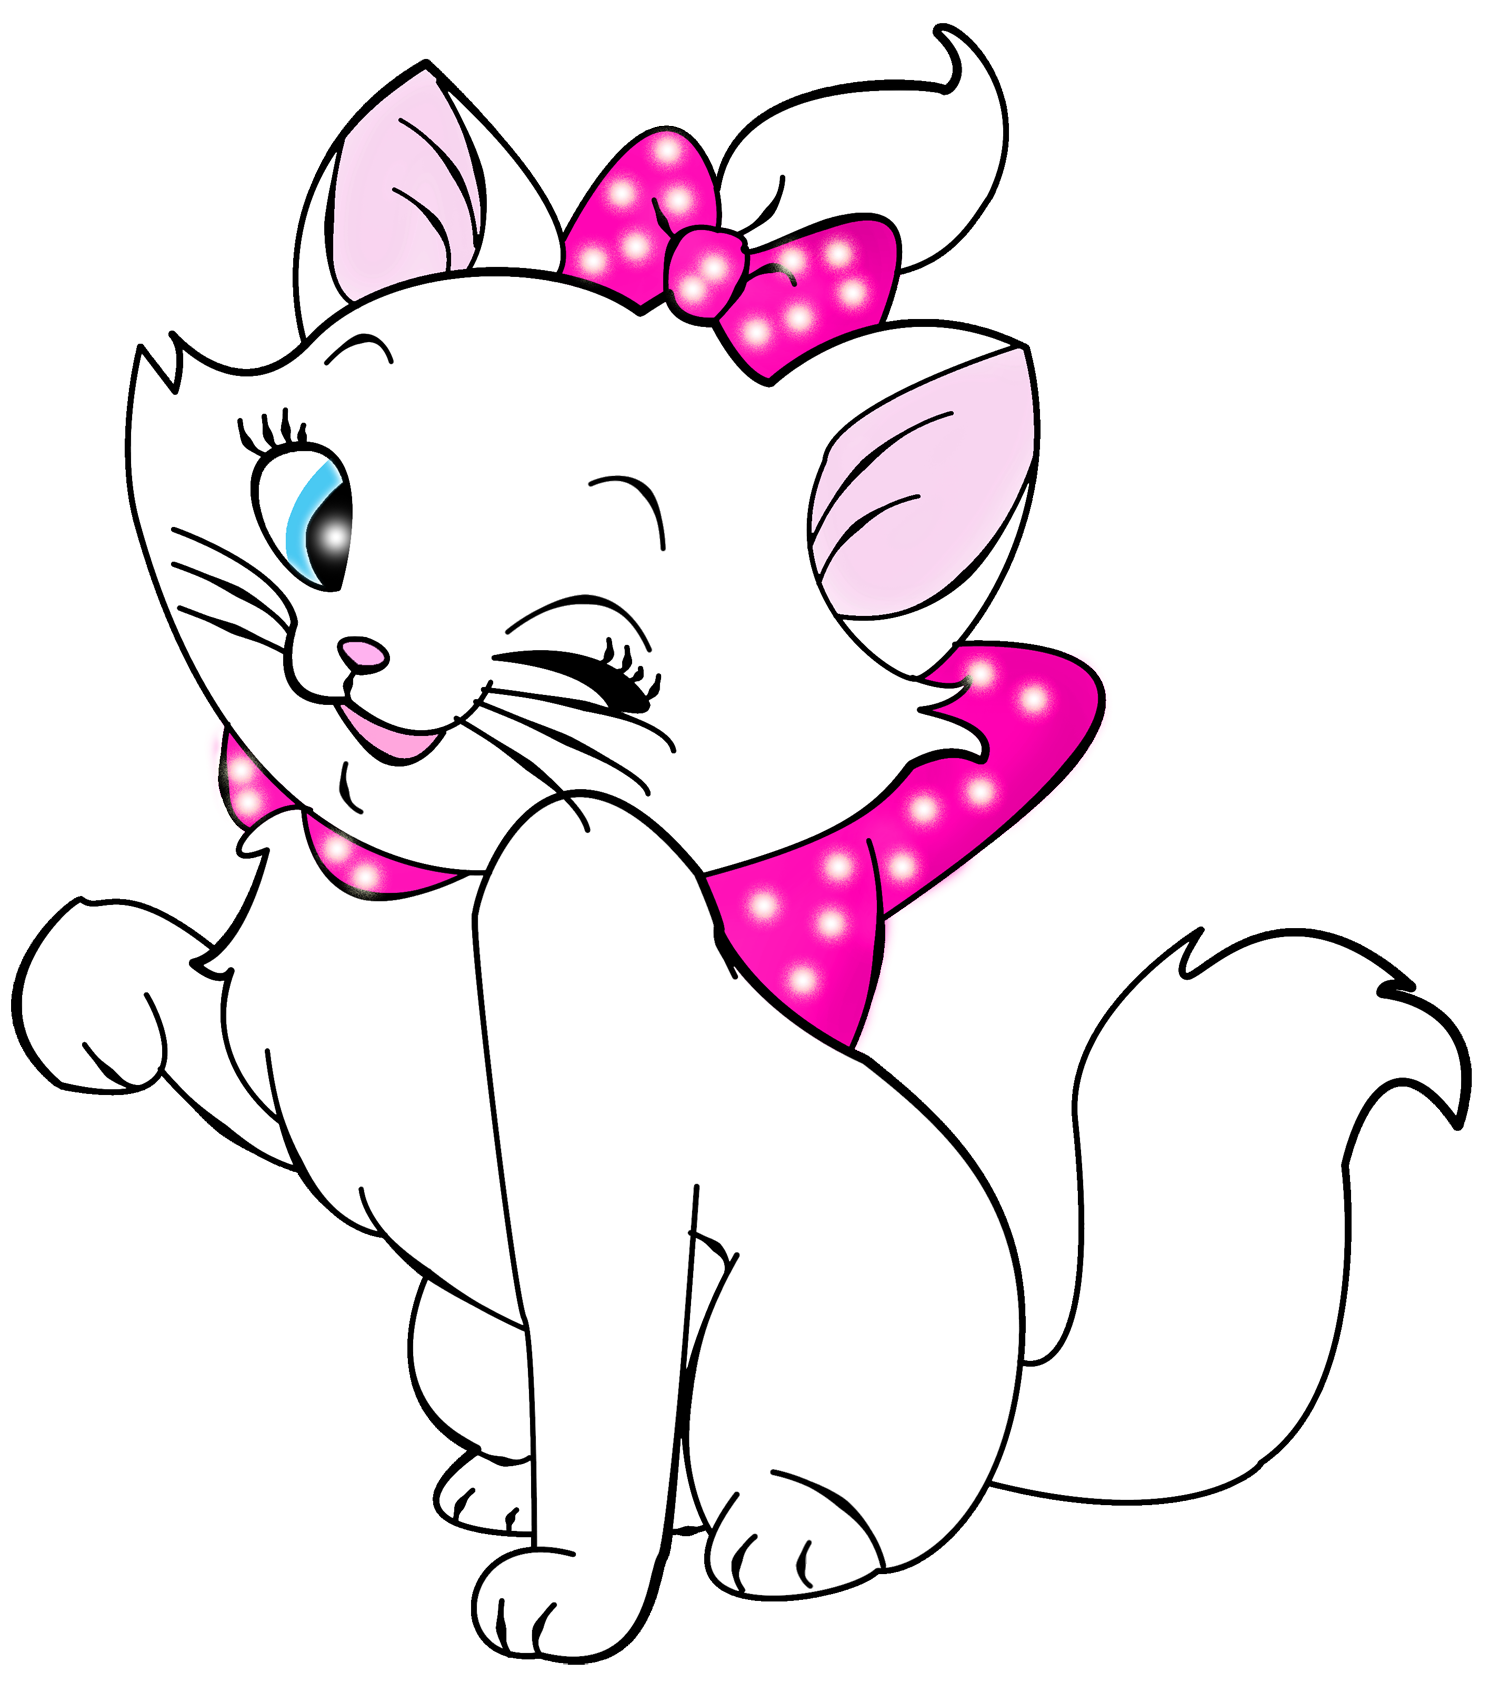 Kittens clipart line art. White kitten cartoon free